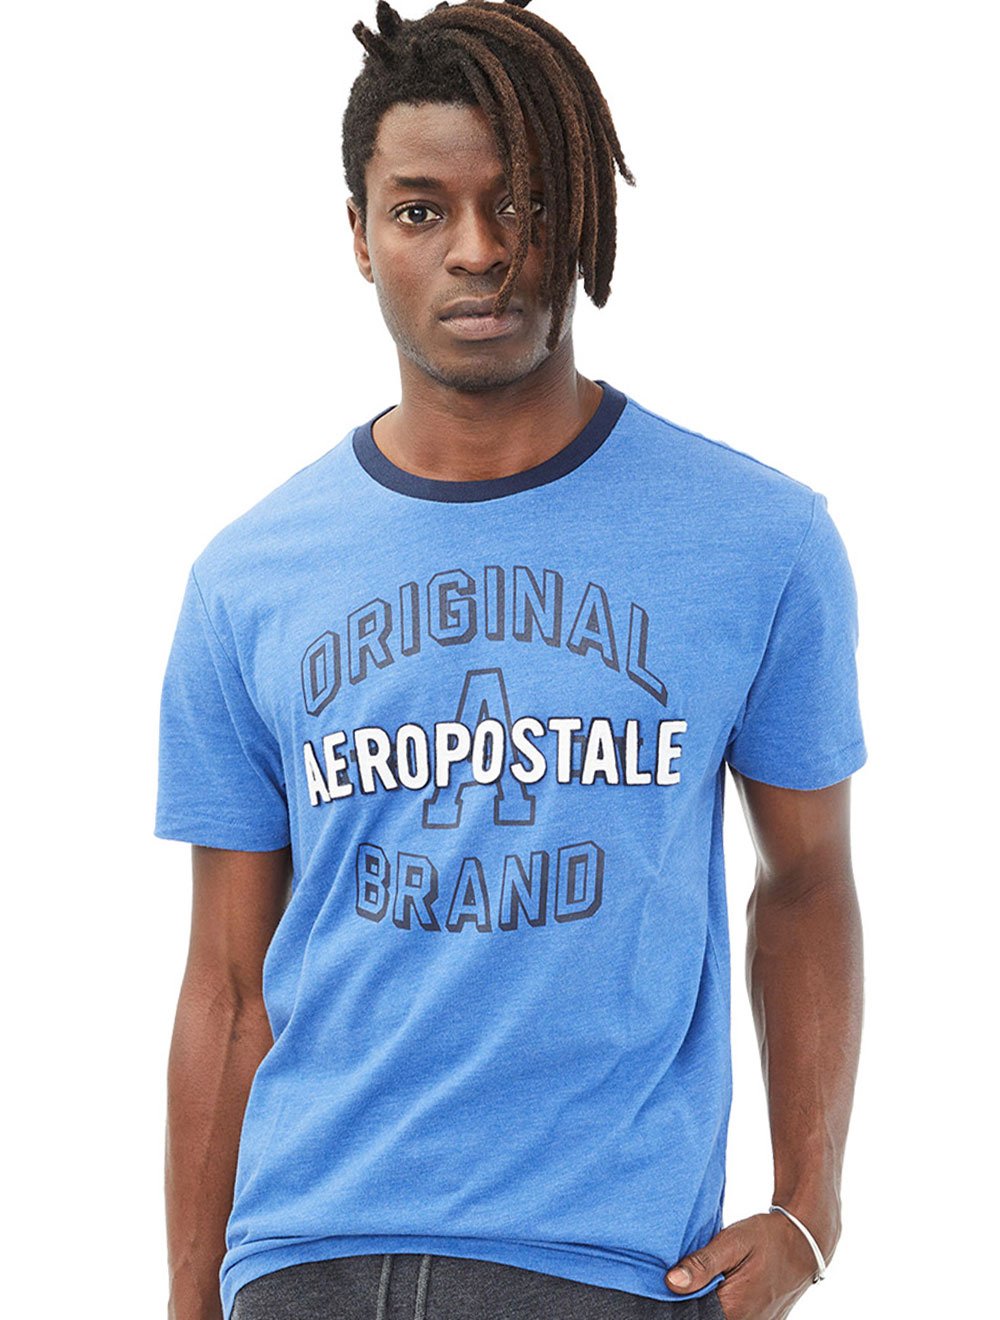 Camiseta Aeropostale Logo Azul-Marinho - Compre Agora